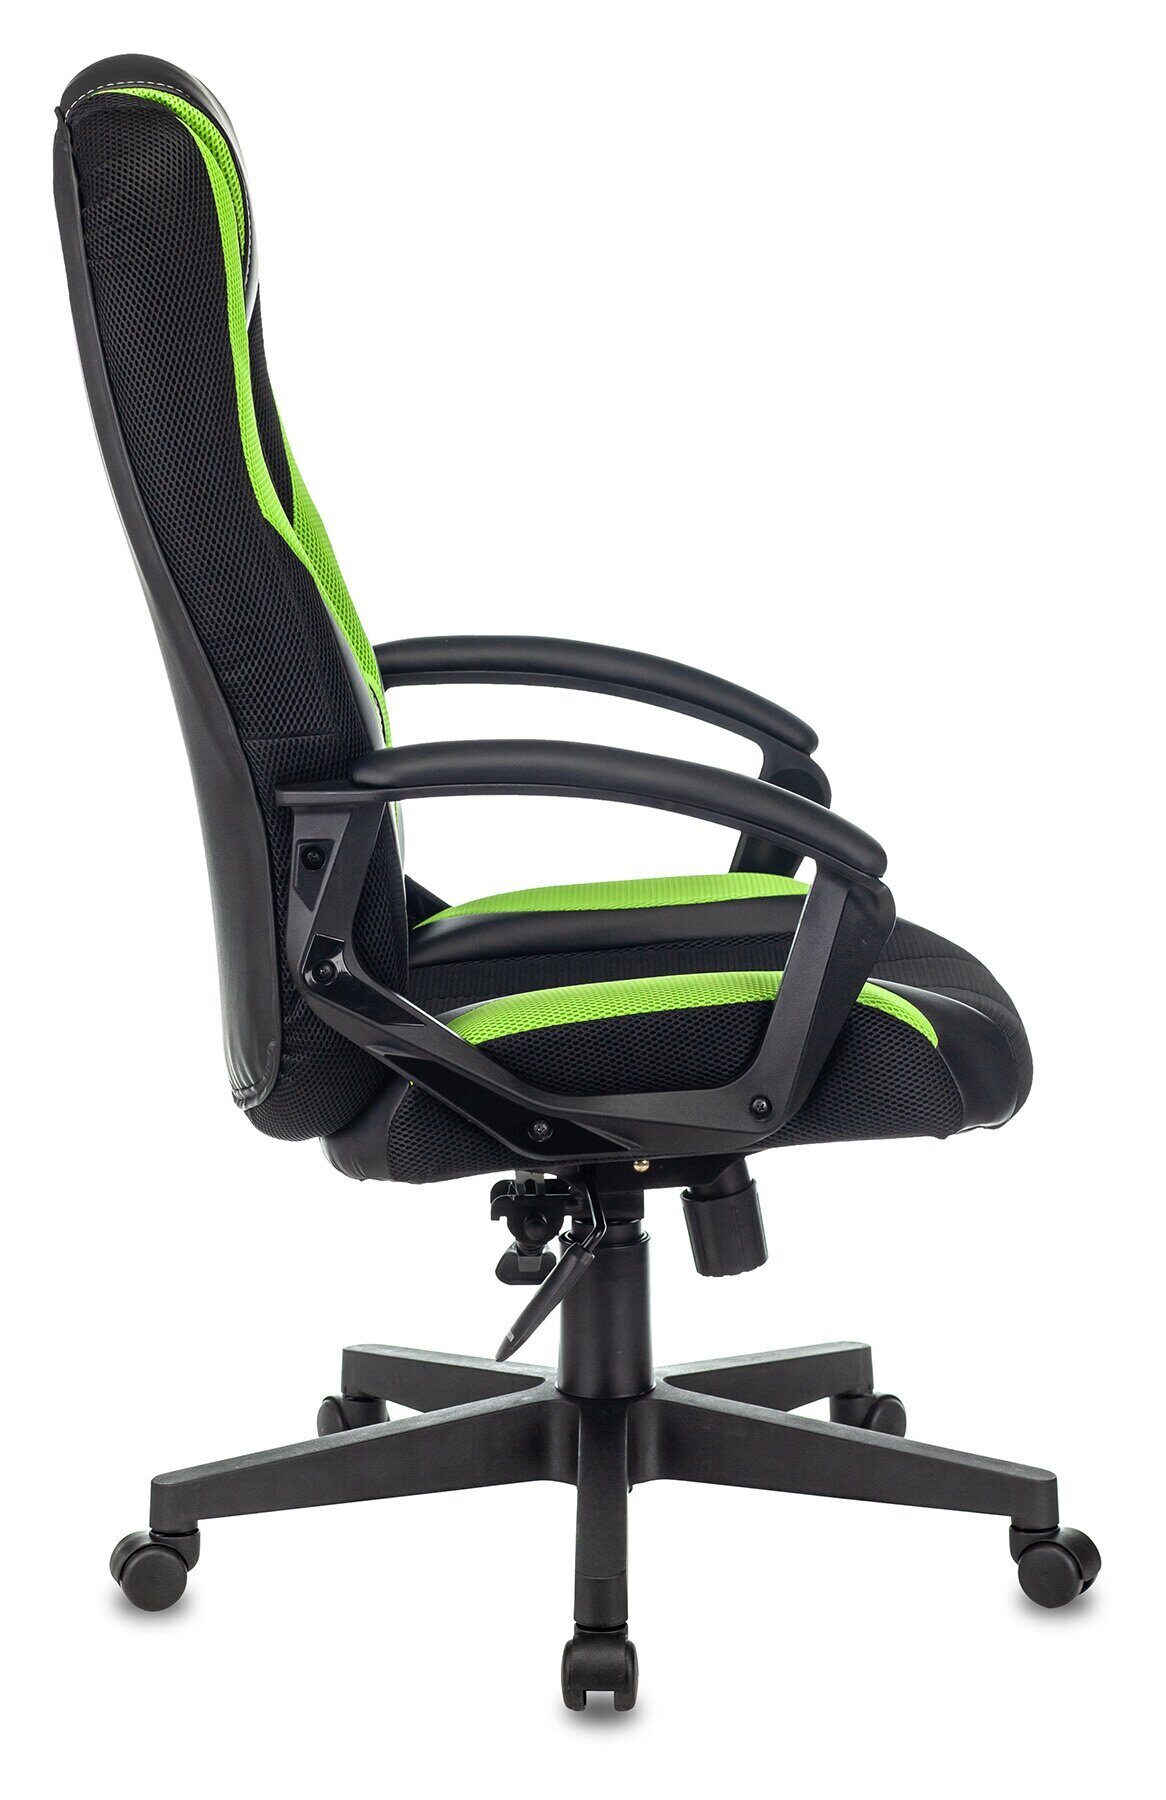 Кресло игровое Бюрократ ZOMBIE 9 Ткань, механизм качания топ ган Lux, черно-зеленое викинг 9